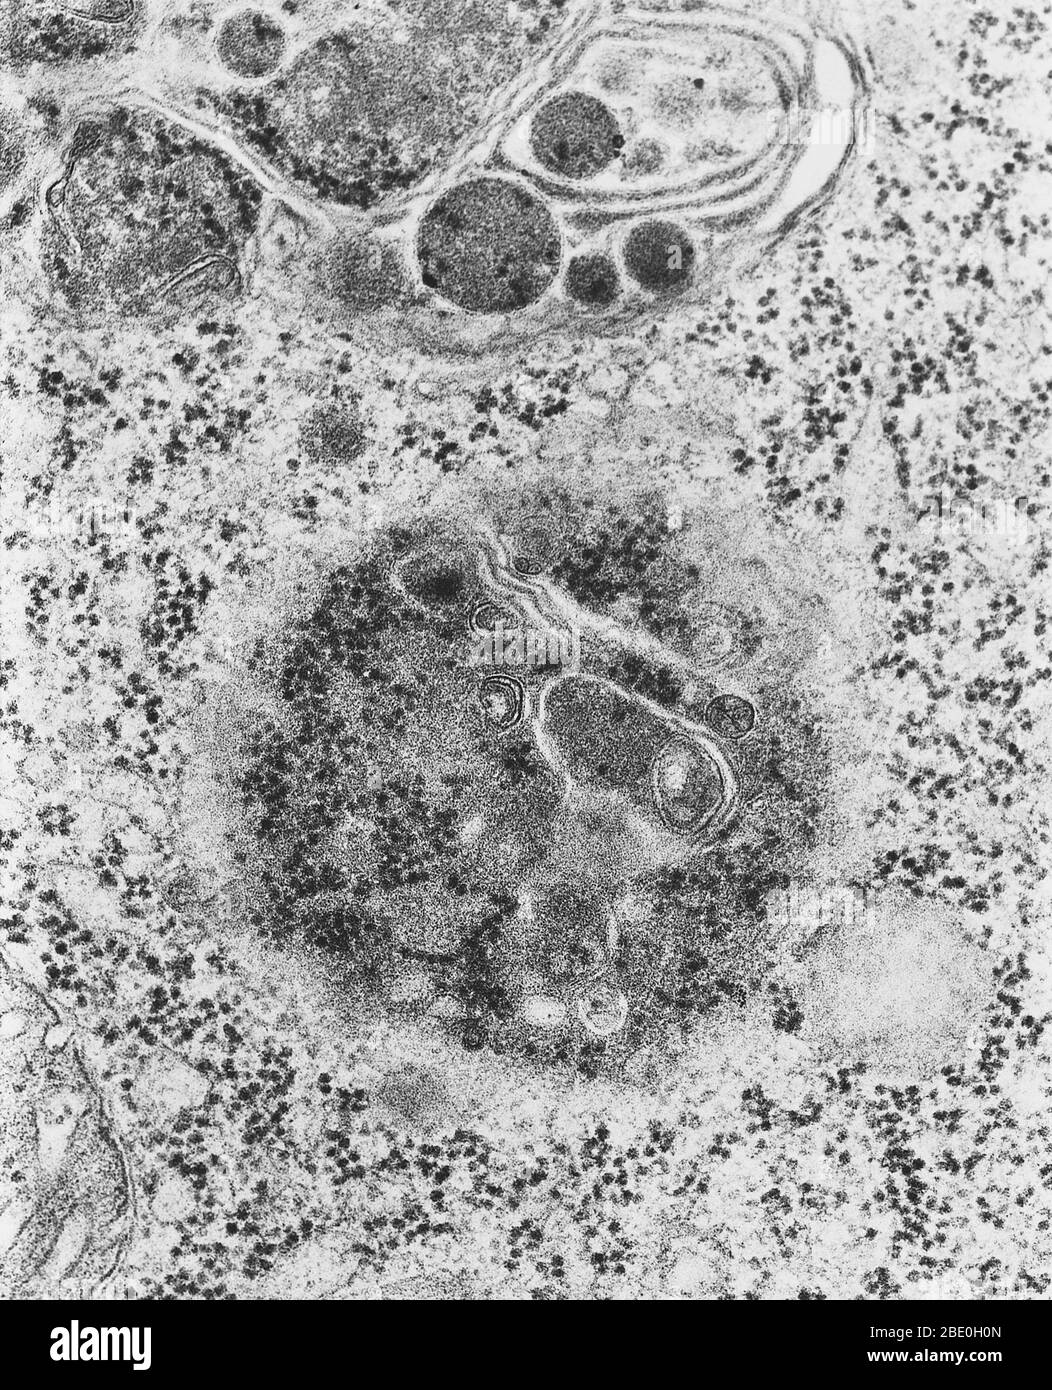 Transmissionselektronenmikrograph (TEM) von Lysosomen. Ein Lysosososososum  ist ein membrangebundenes Organell, das in fast allen tierischen Zellen  gefunden wird. Es sind kugelförmige Vesikel, die hydrolytische Enzyme  enthalten, die praktisch alle Arten ...